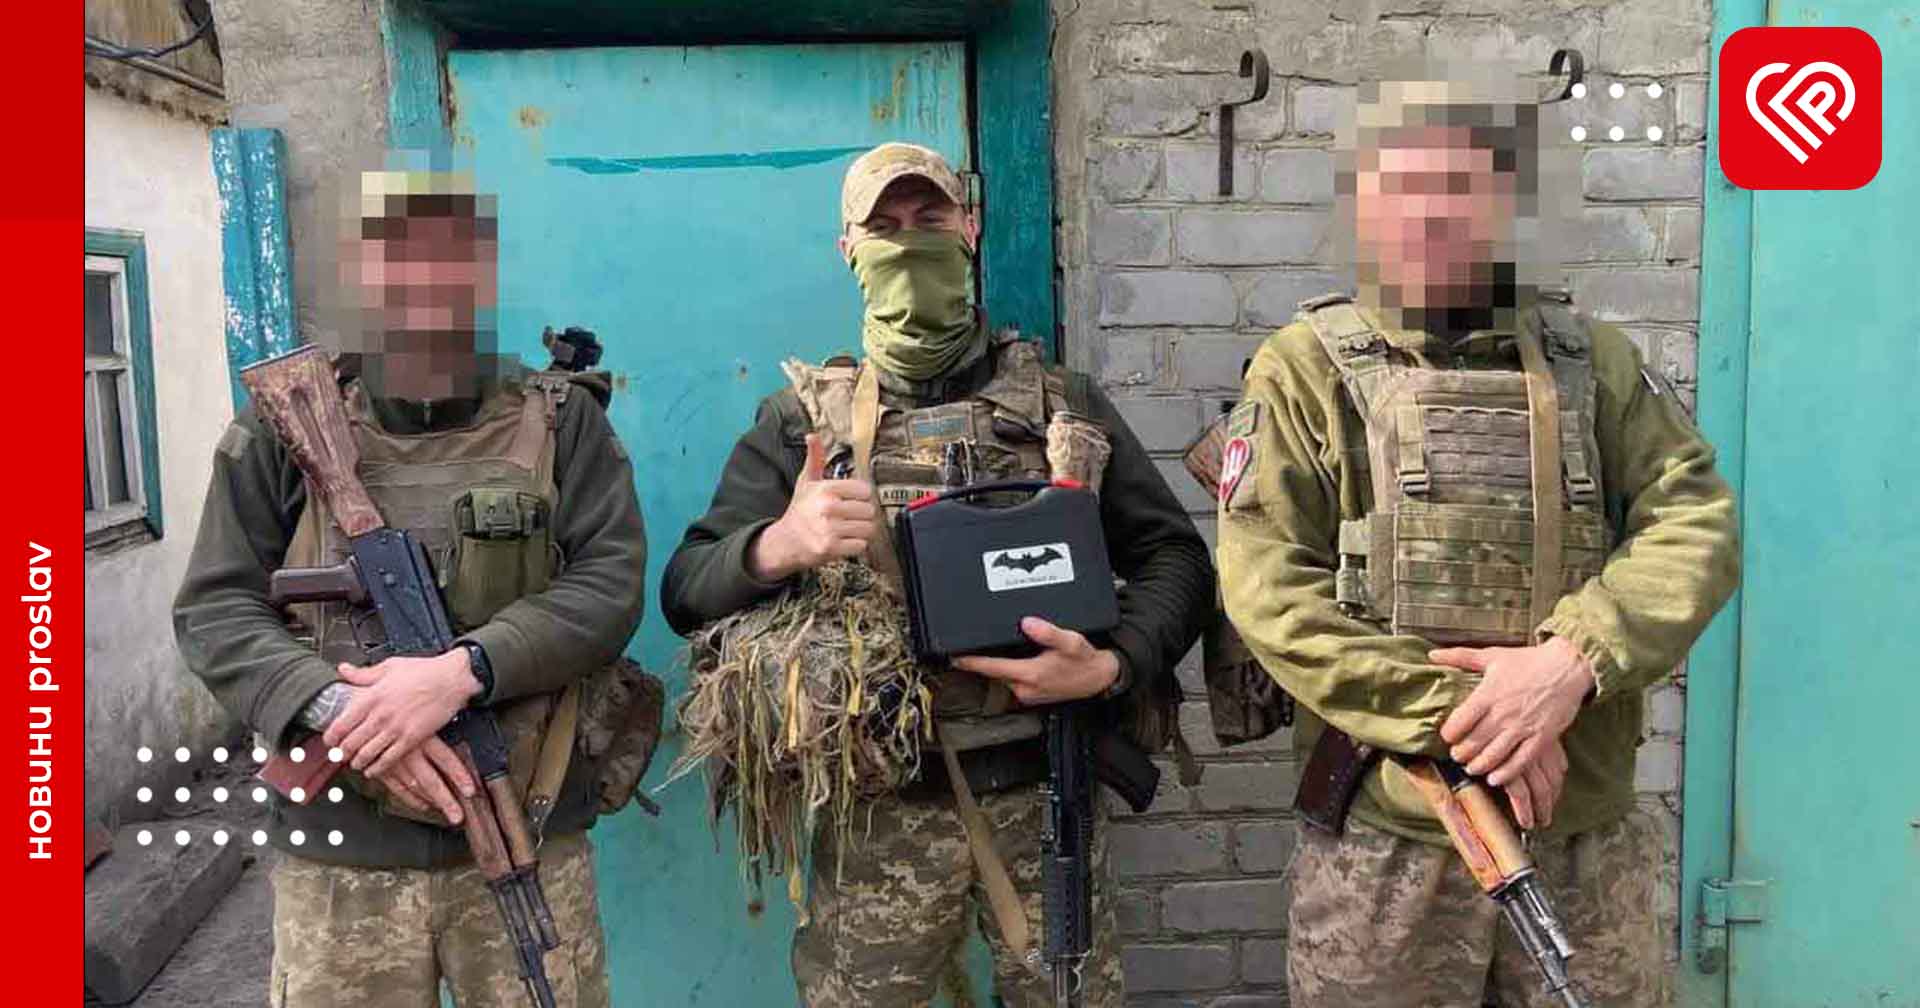 Для бригади захисника з Переяславщини придбали дві антени-підсилювачі сигналу для квадрокоптерів: бійці вже отримали обладнання